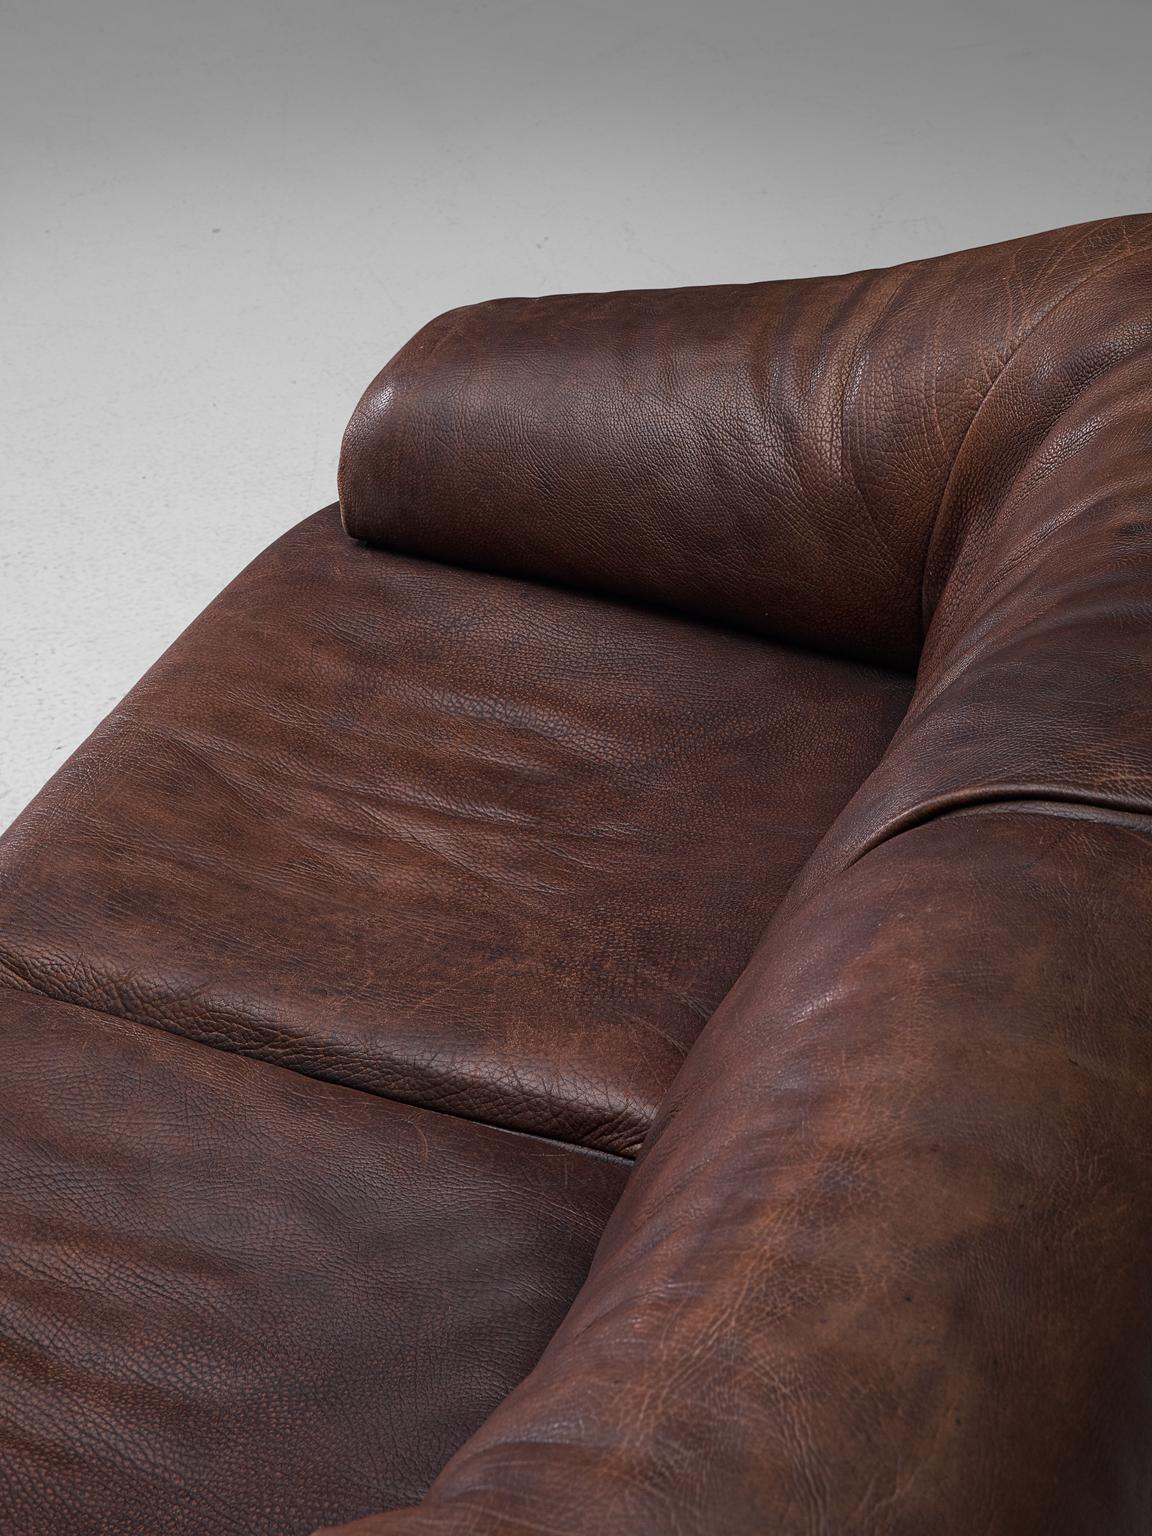 Swiss De Sede Two-Seat Sofa in Dark Brown Buffalo Leather